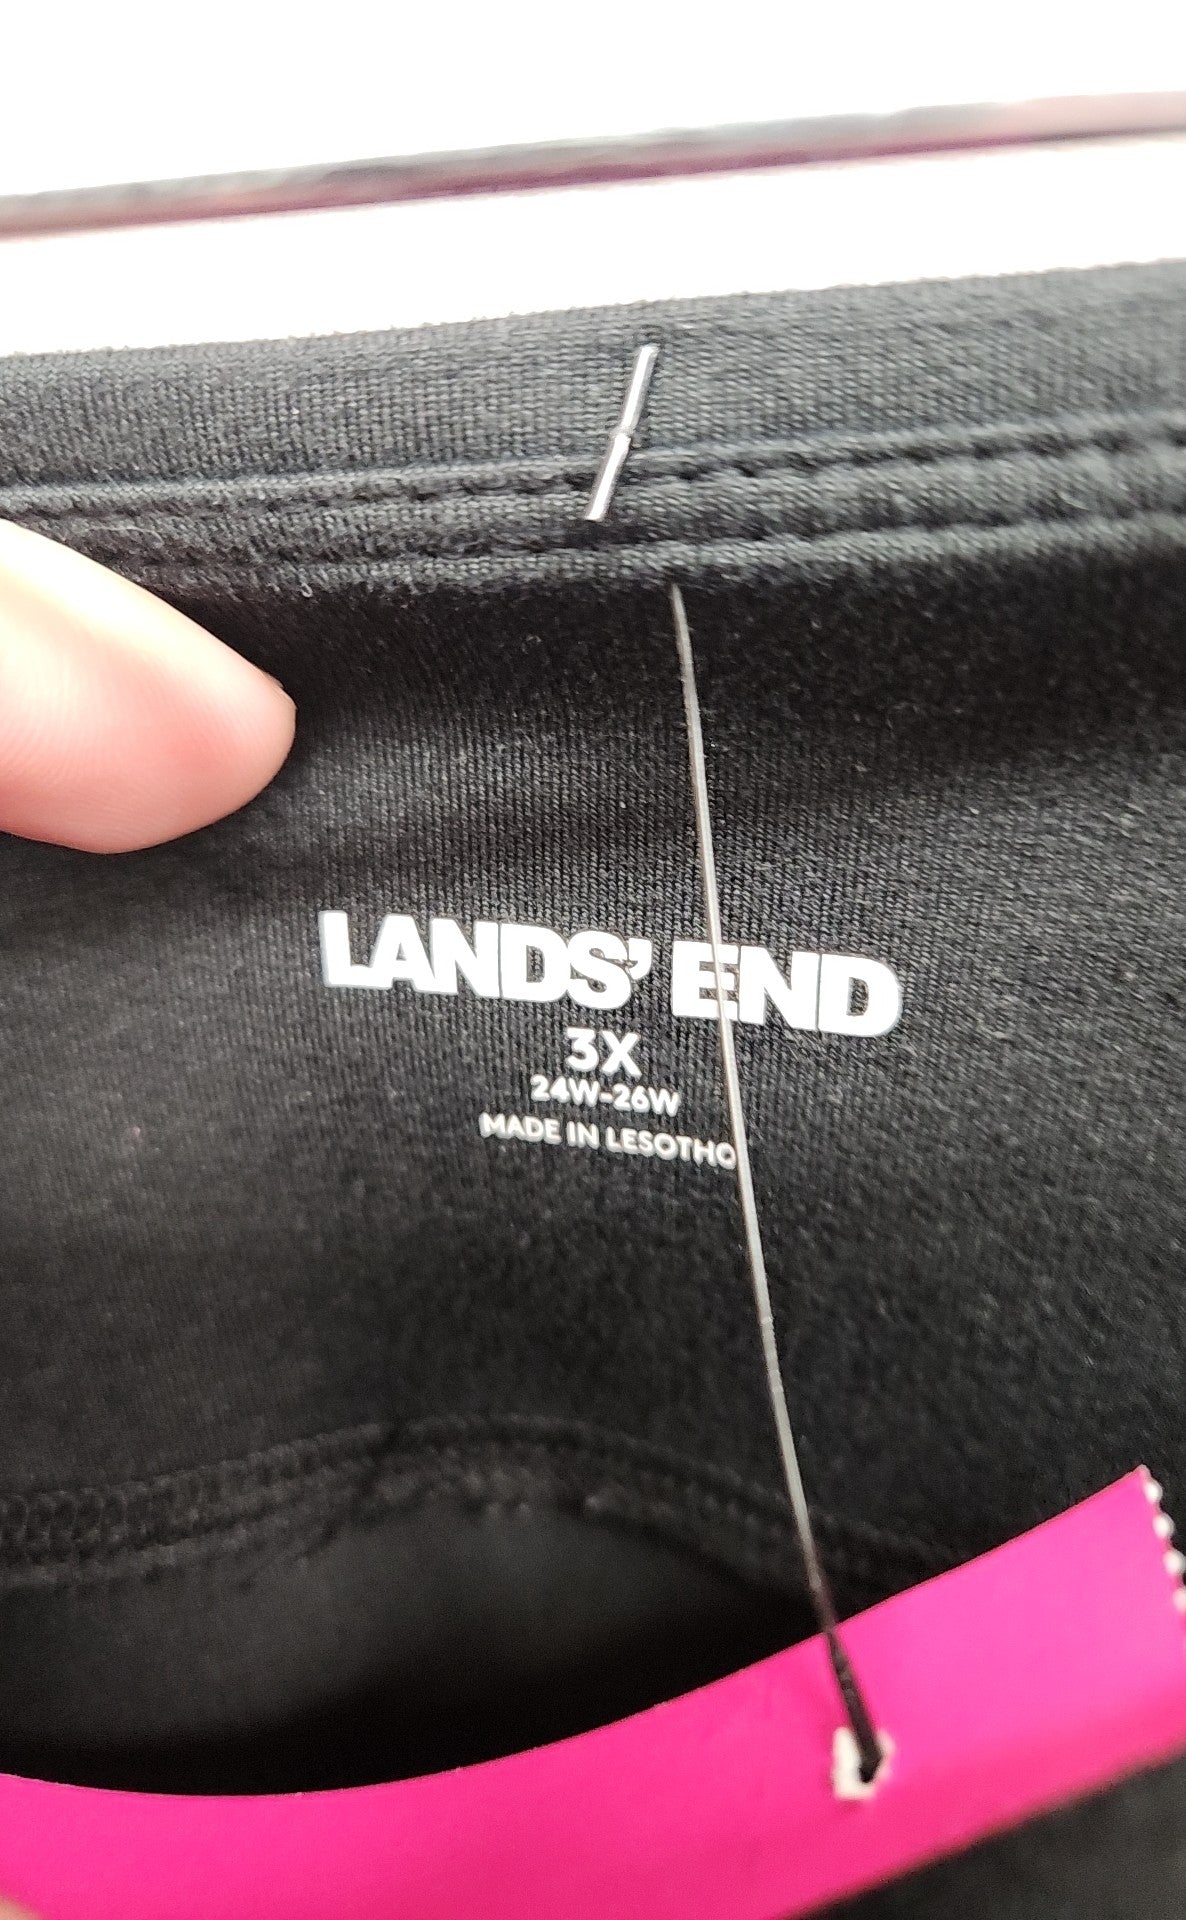 Lands End Women's Size 3X Black Shorts